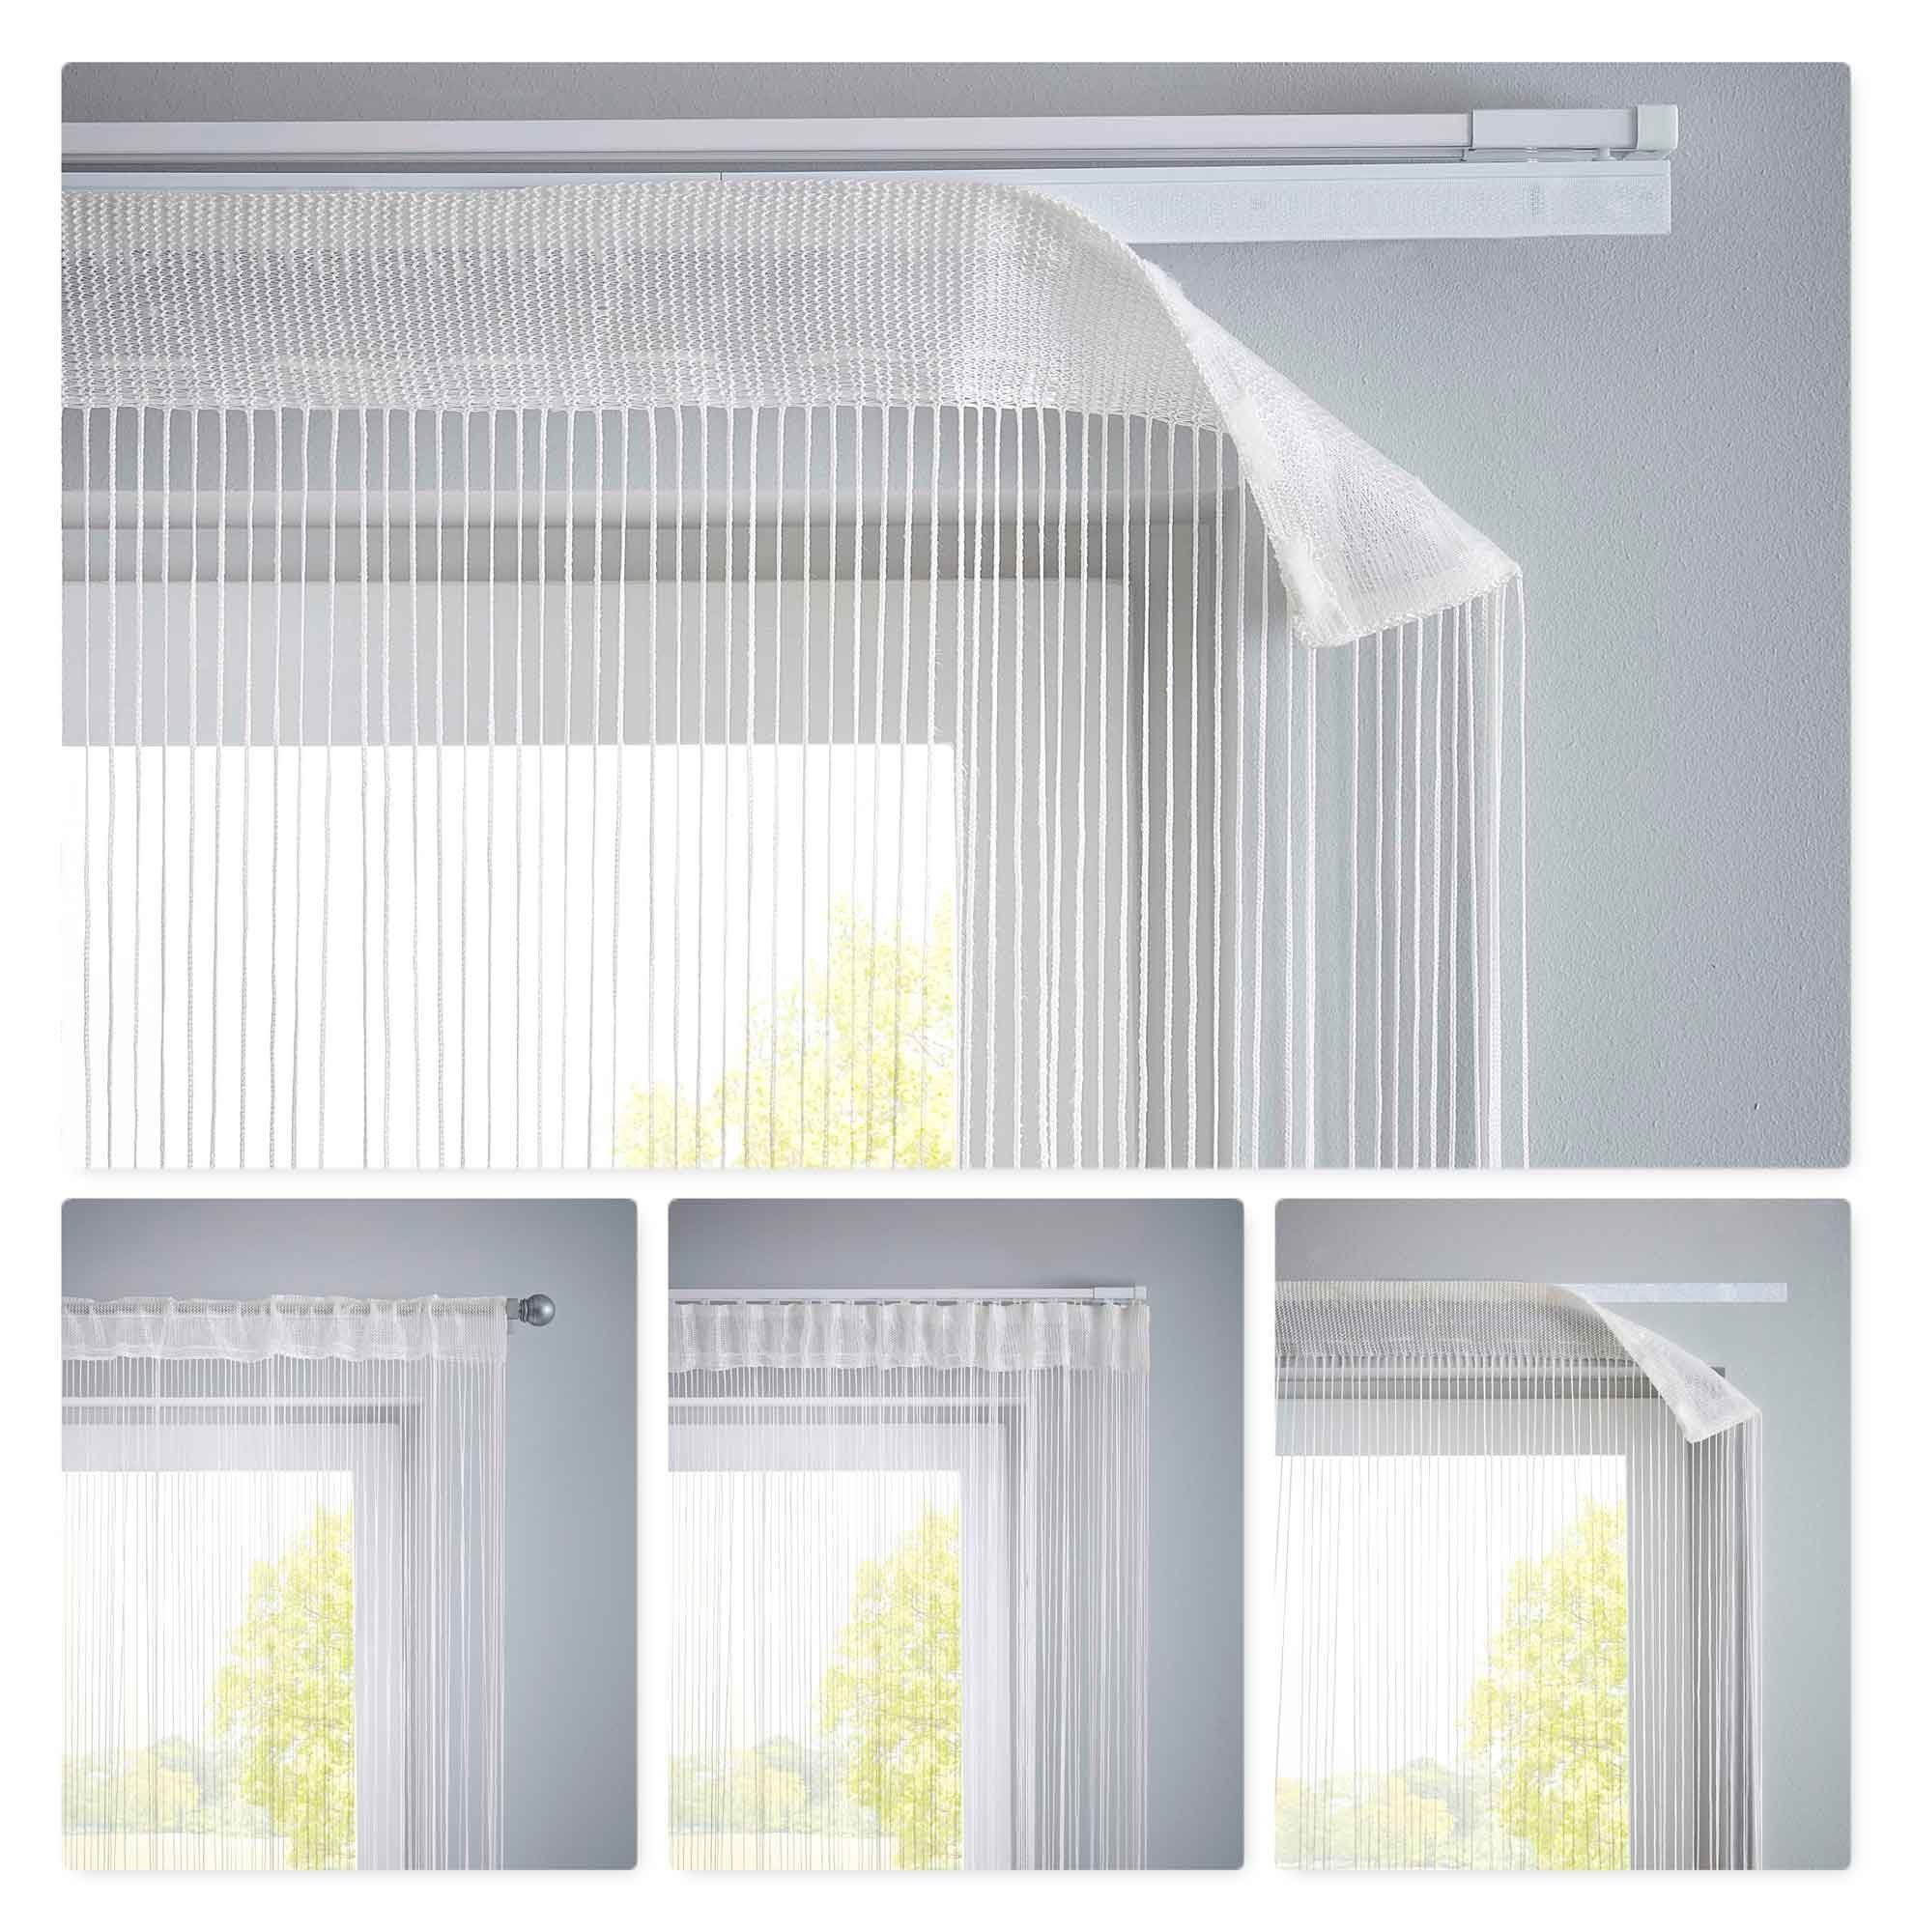 Fadenvorhang, Gardinenbox, Multifunktionsband (2 transparent, Fadengardinen St), Tunneldurchzug Flauschband Multiband Lurex Raumteiler 20303MB2 Weiß